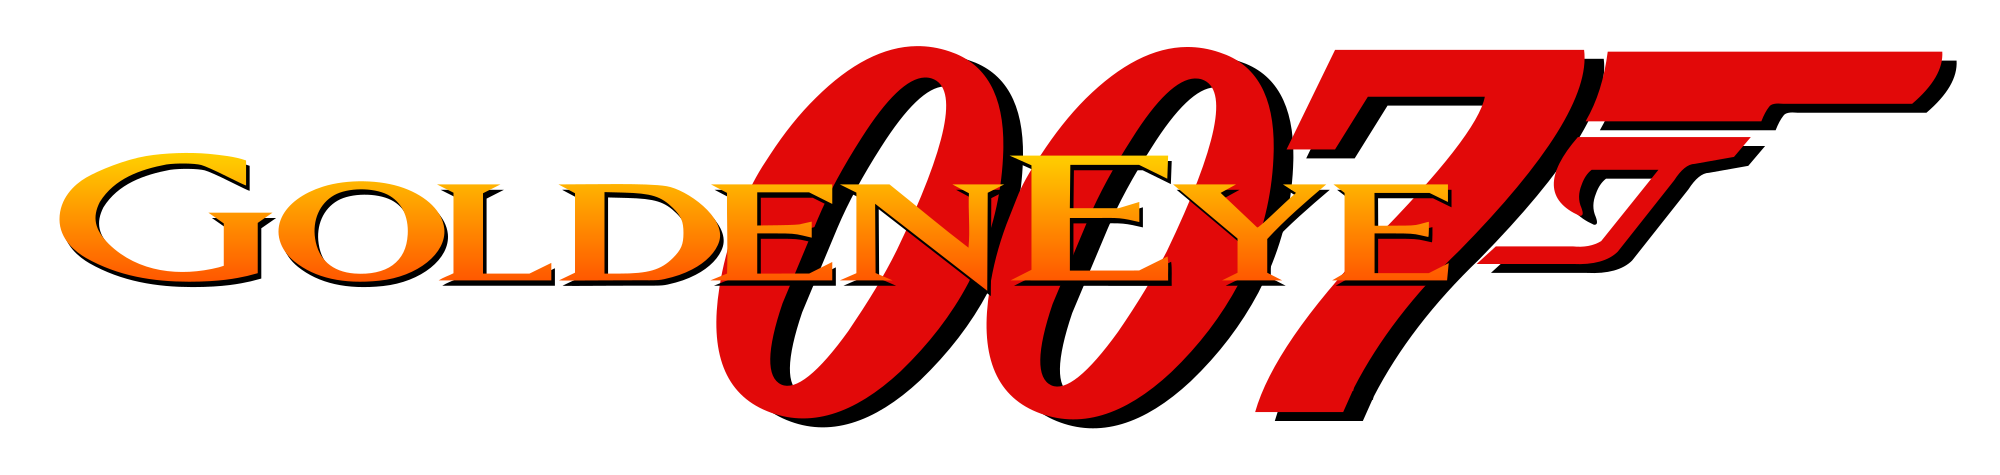 GoldenEye 007 Logo No Background